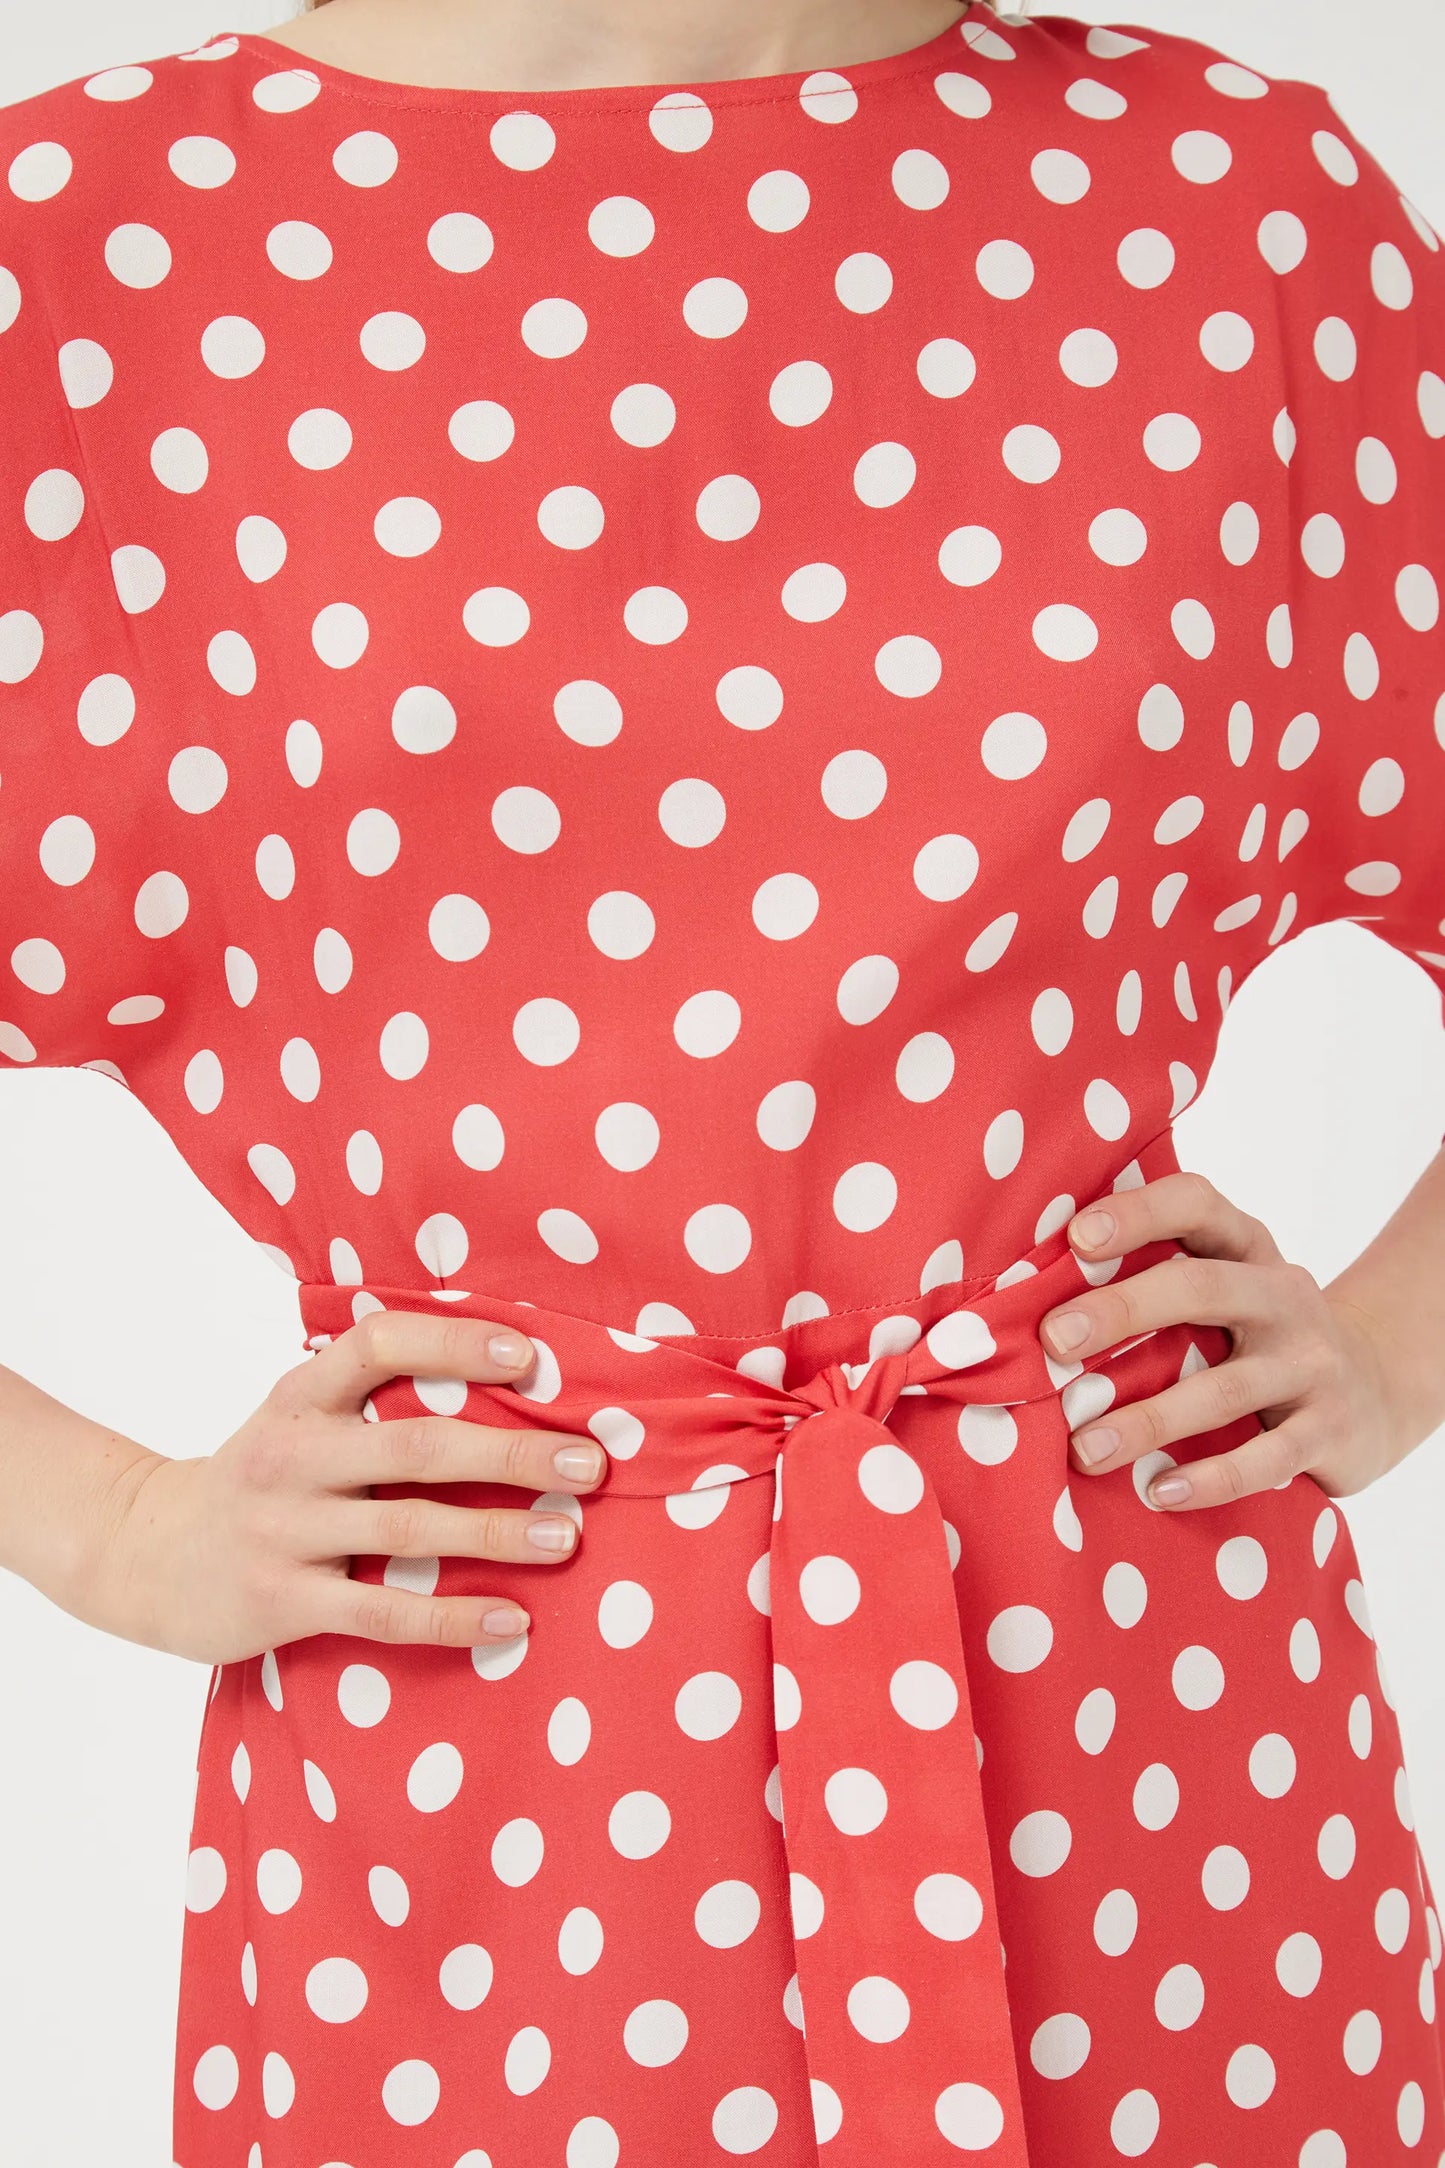 Short red polka dot dress